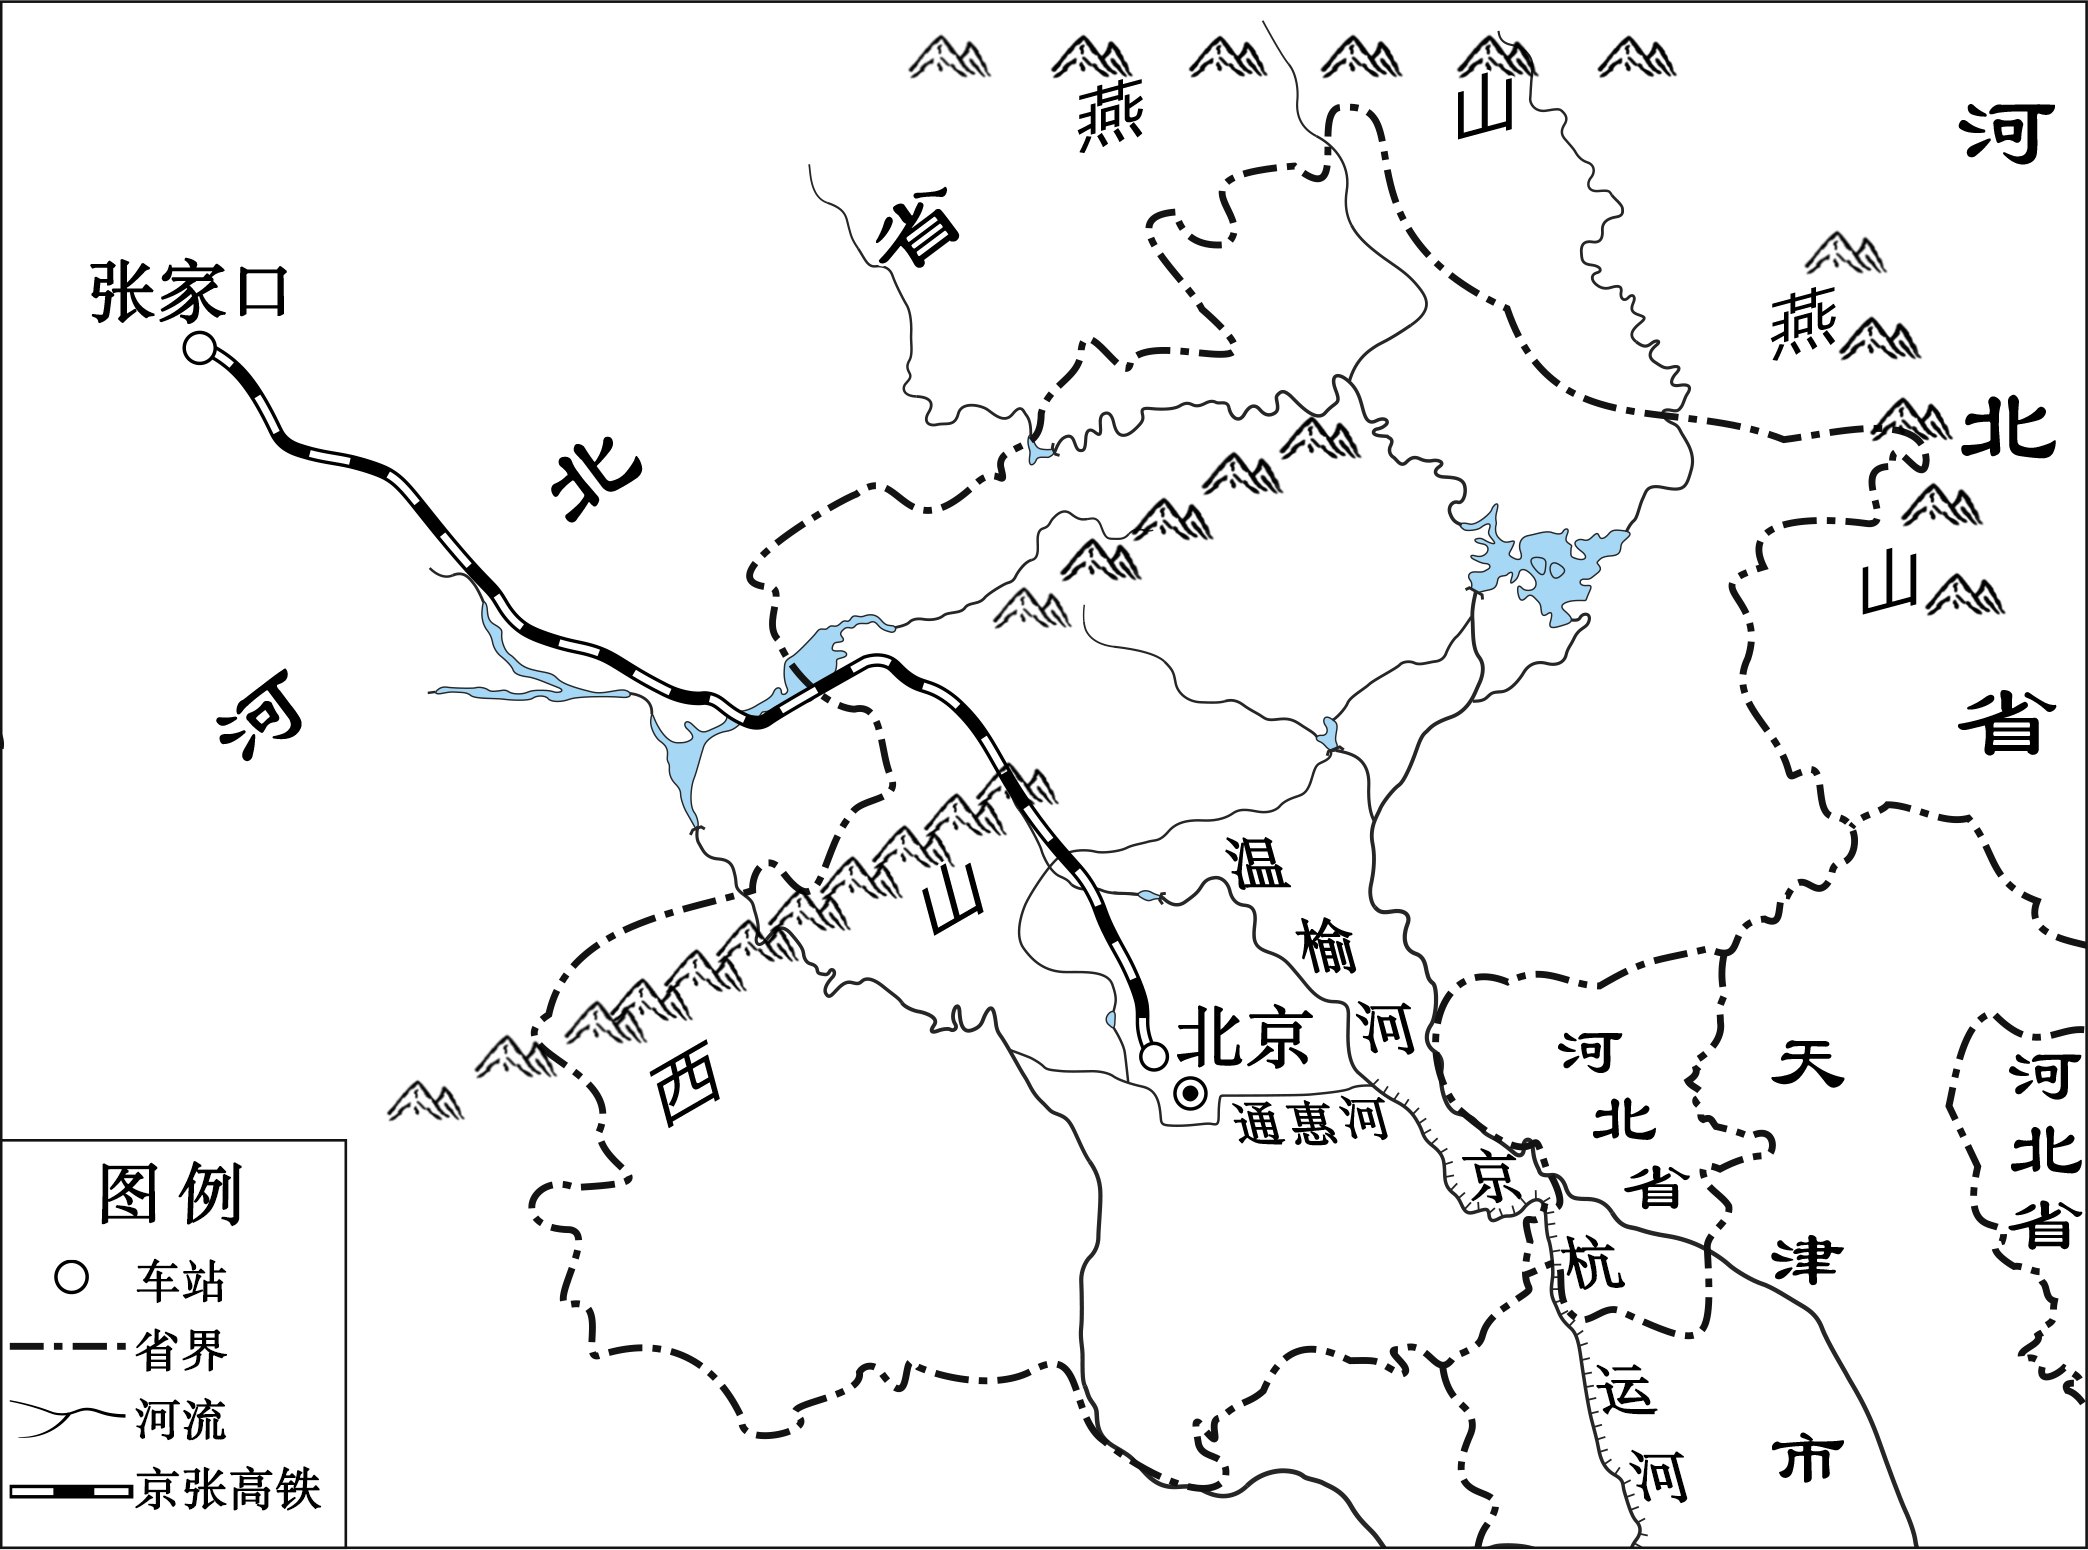 2021一模图-朝阳区-京张铁路-京张铁路无地形